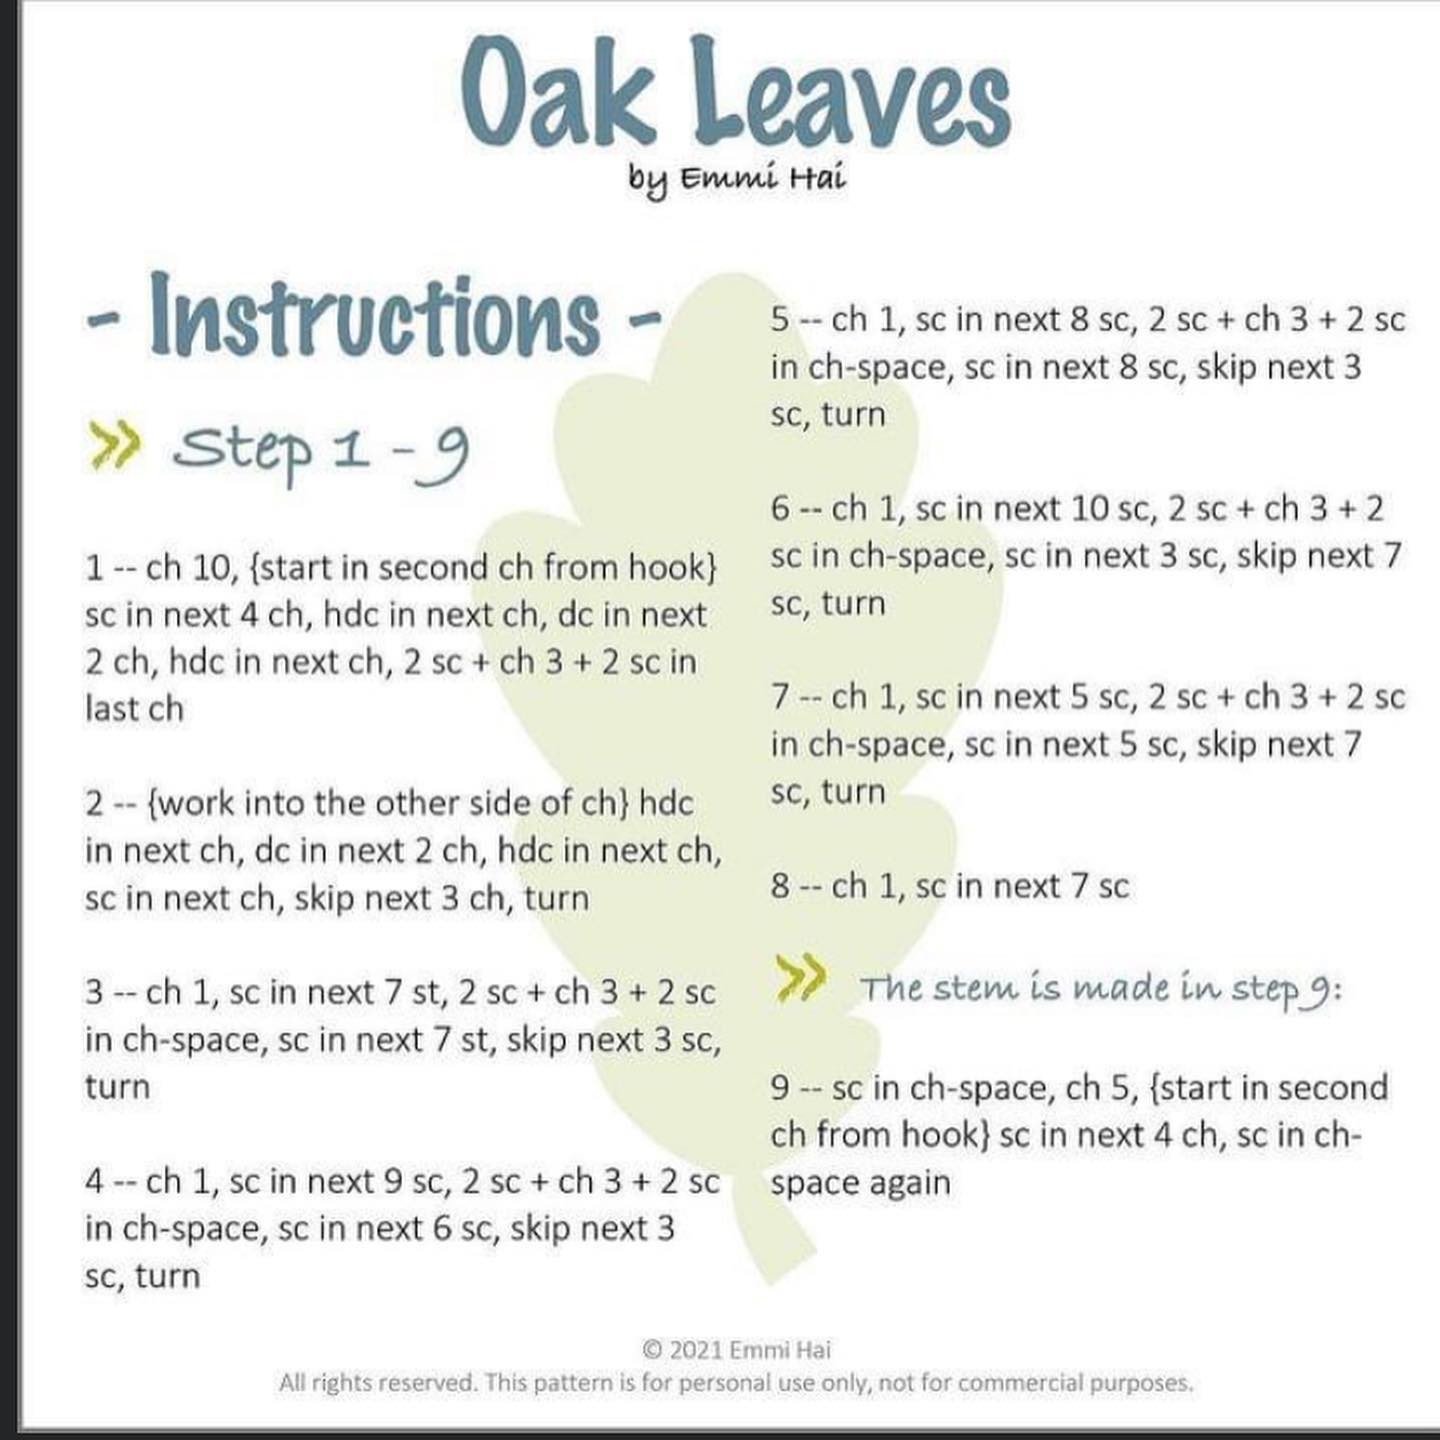 Oak leaf crochet pattern